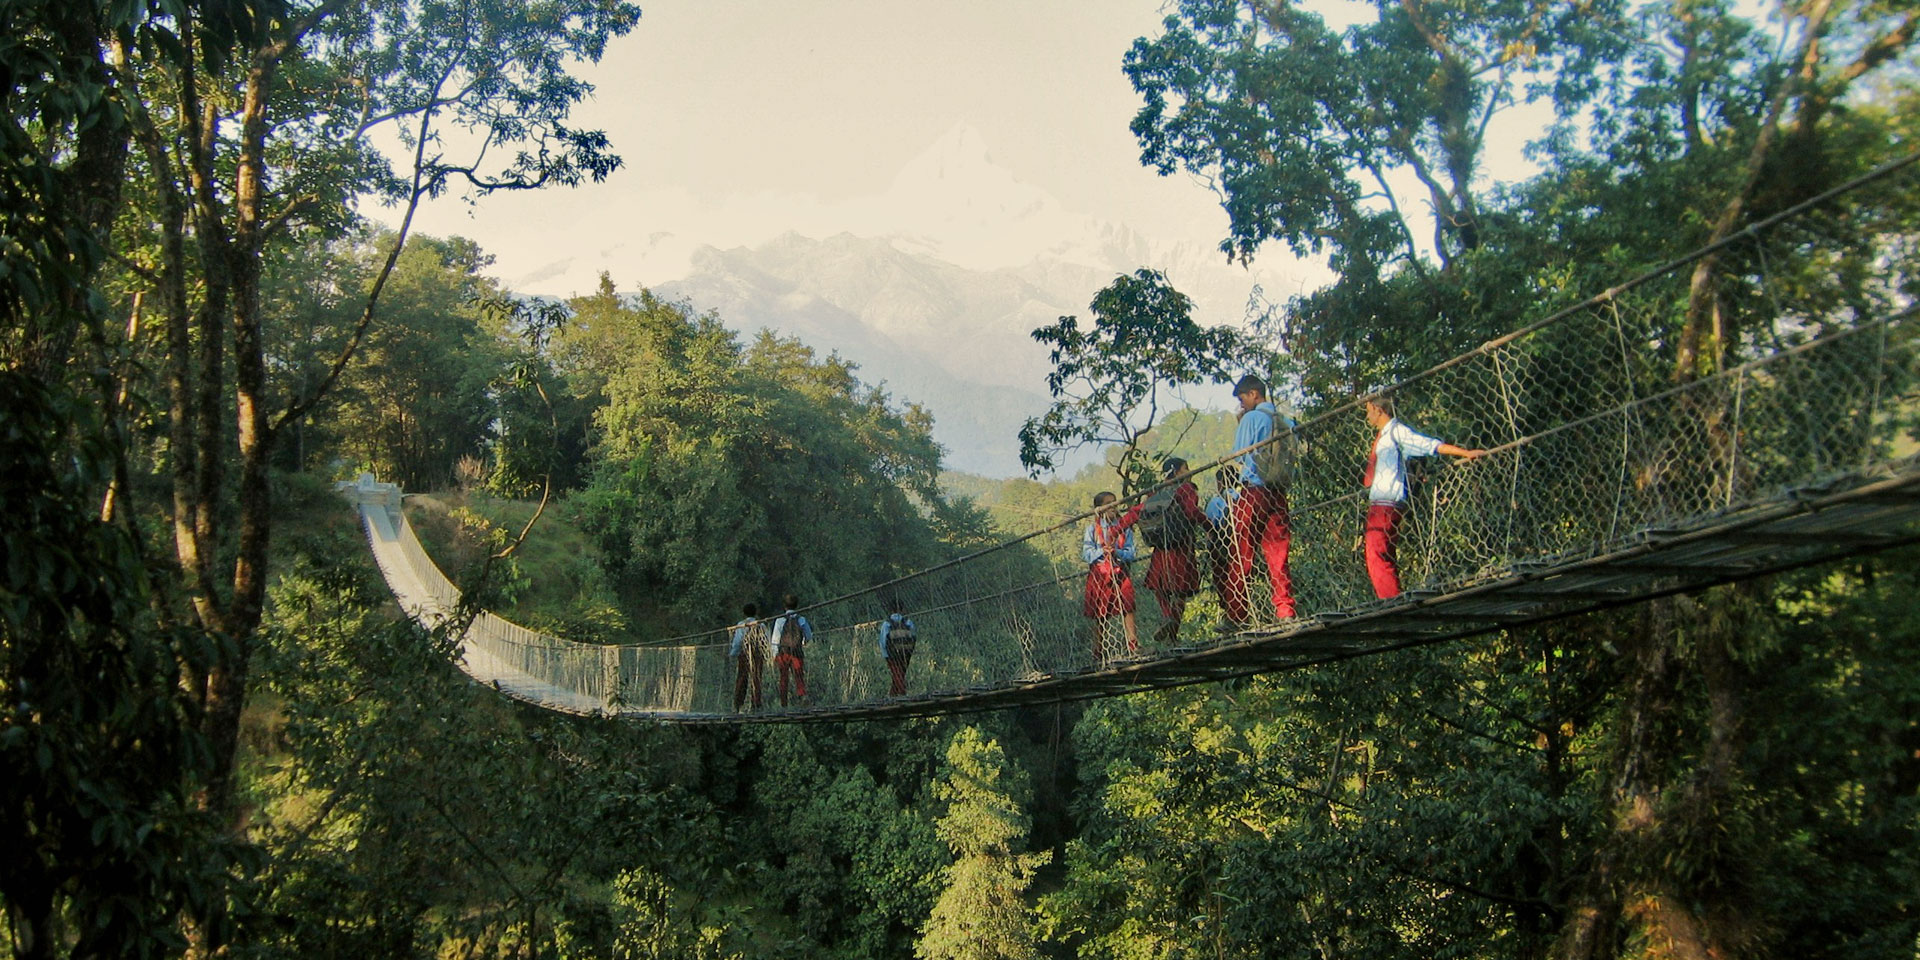 Schoolchildren on a trail bridge.